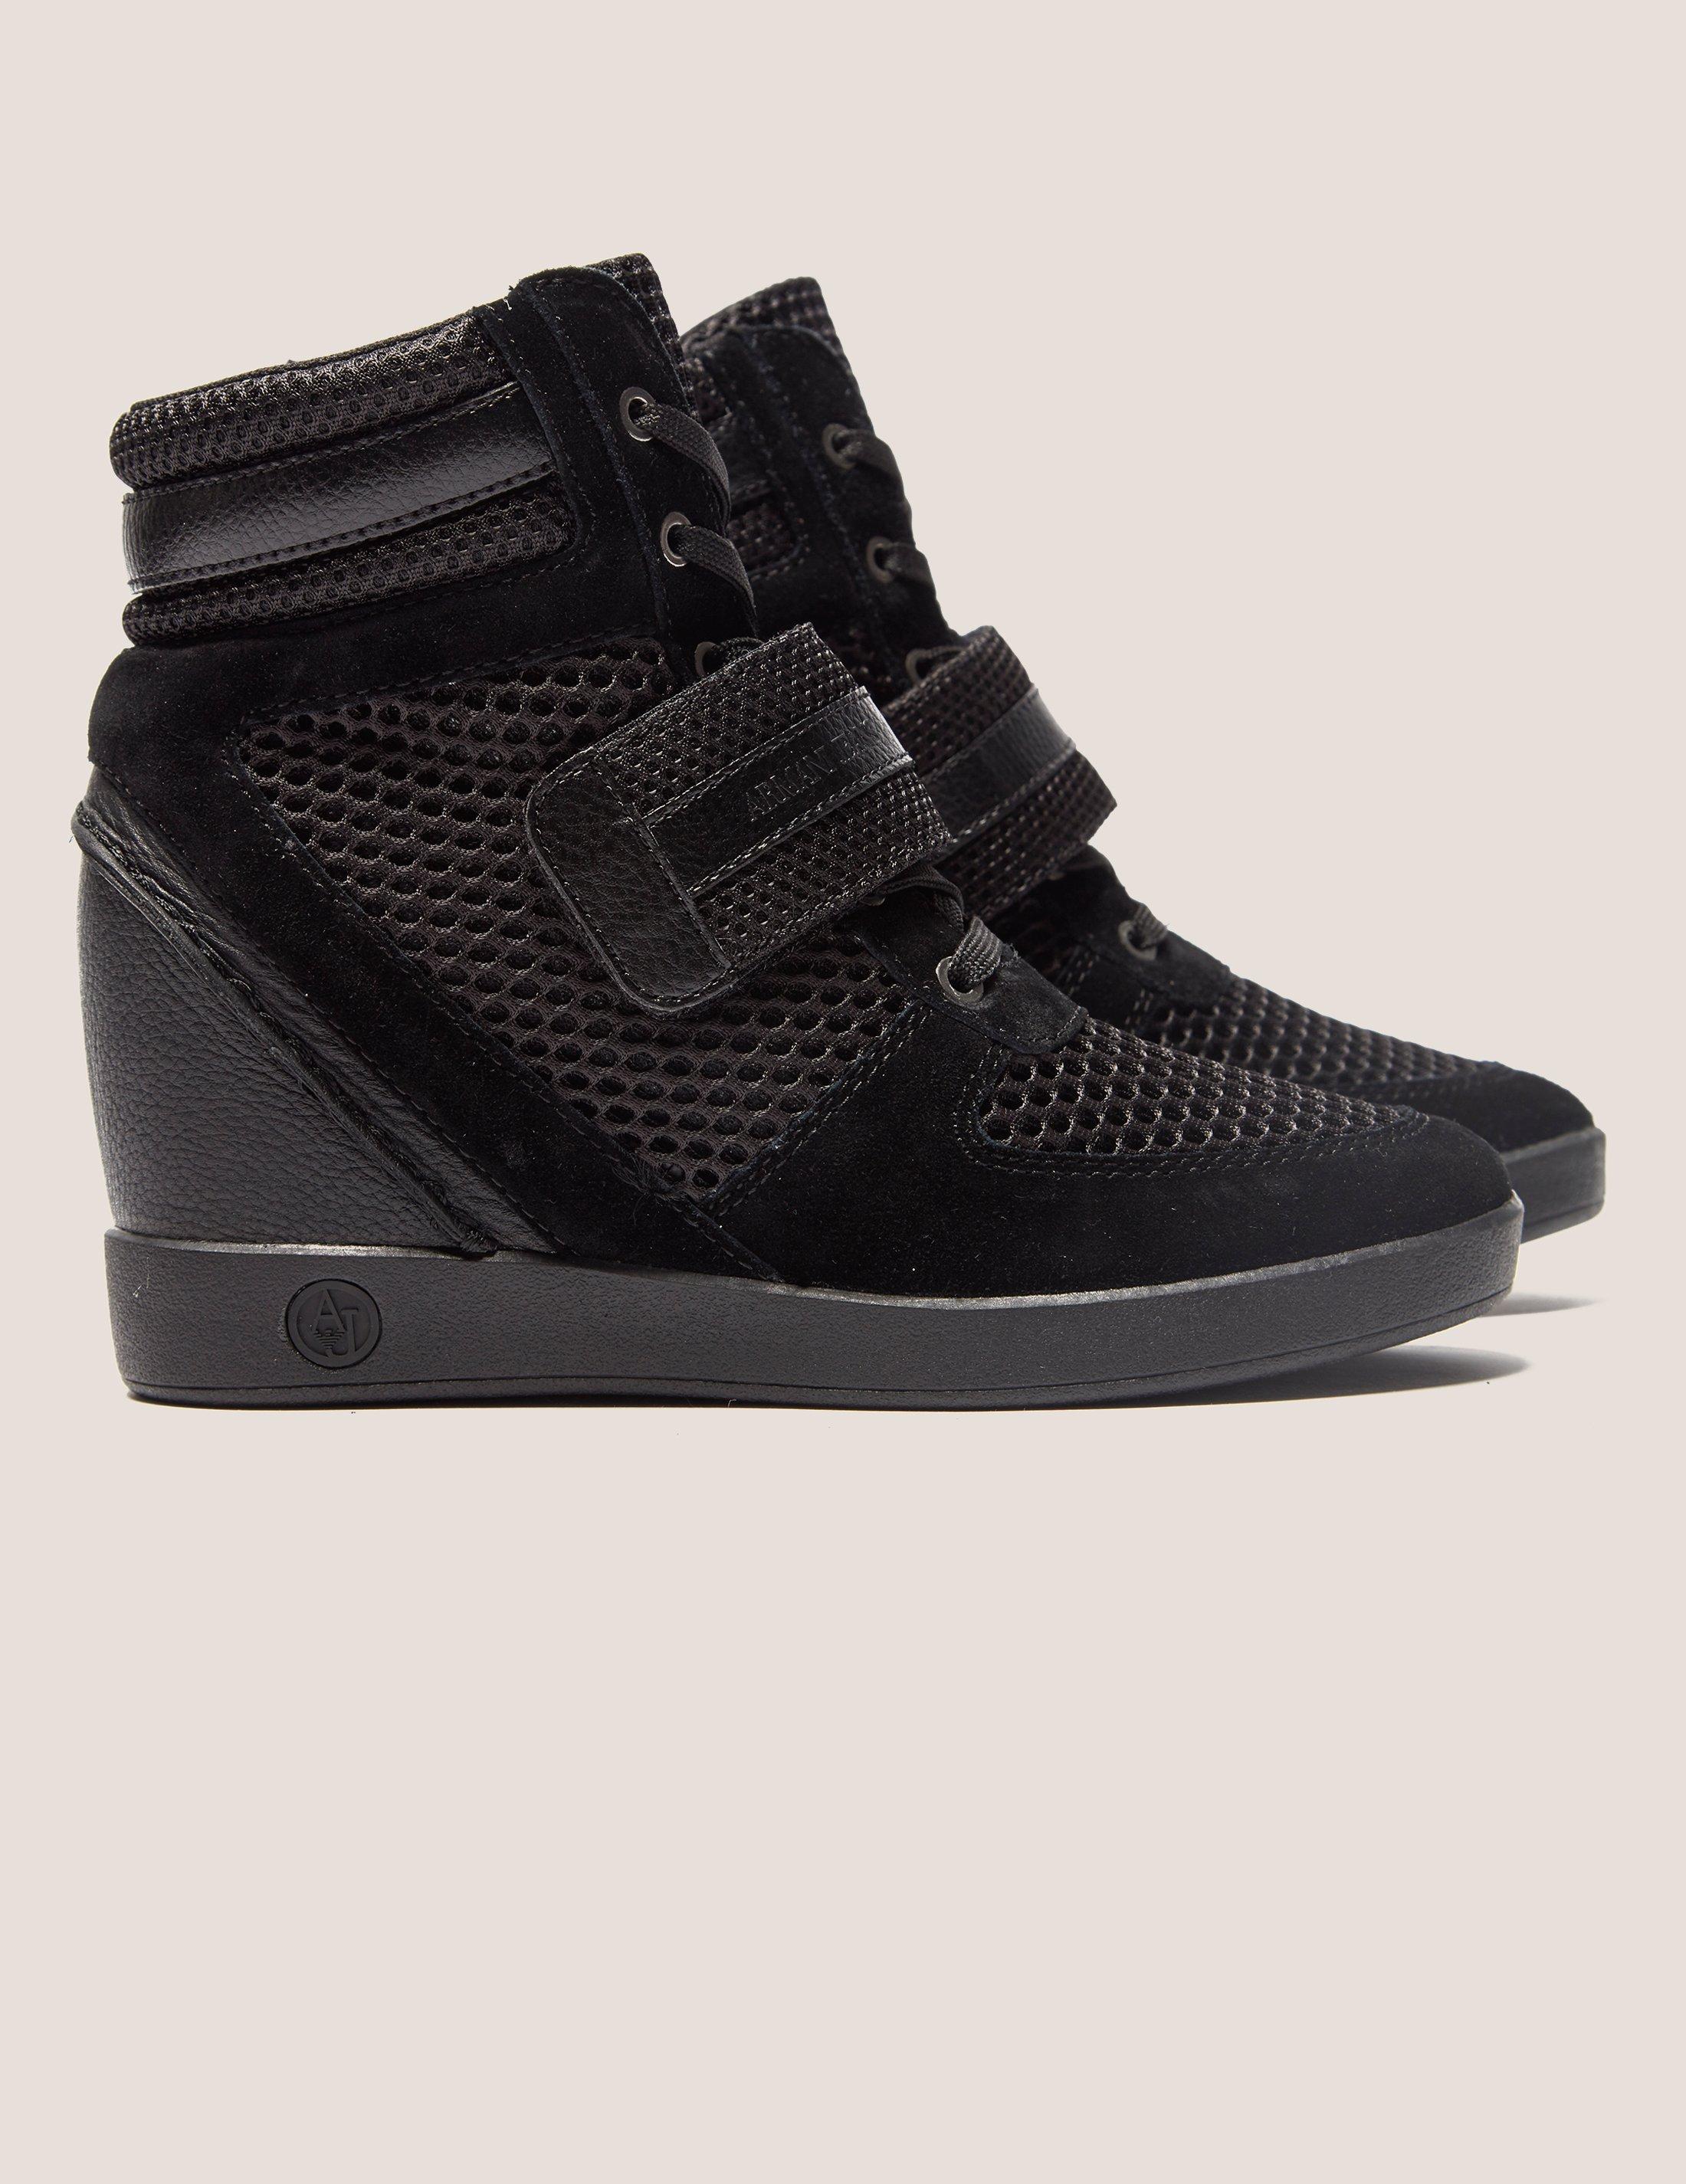 Armani Jeans Denim High Top Wedge Sneakers in Black | Lyst